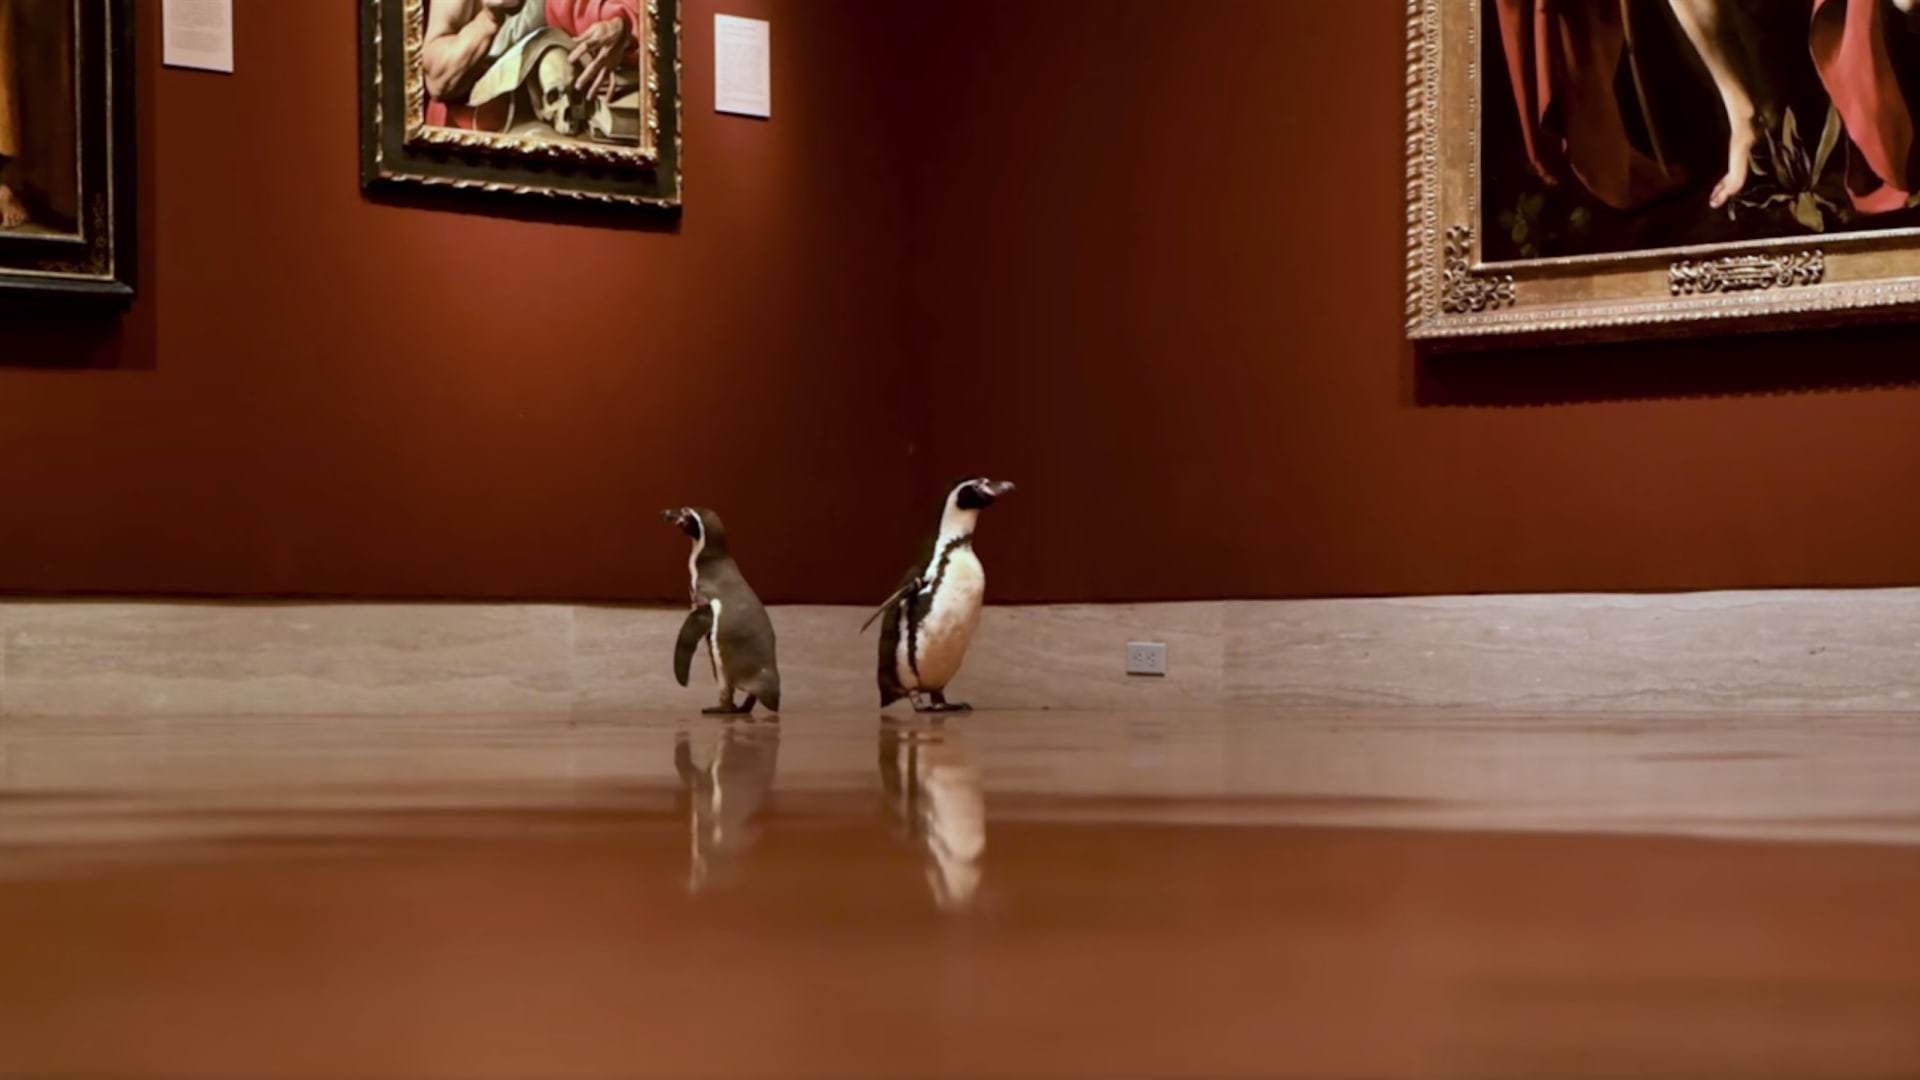 مجموعة من البطاريق تتجول في متحف أمريكي وتحظى بصباح مليء بالفنون الجميلة